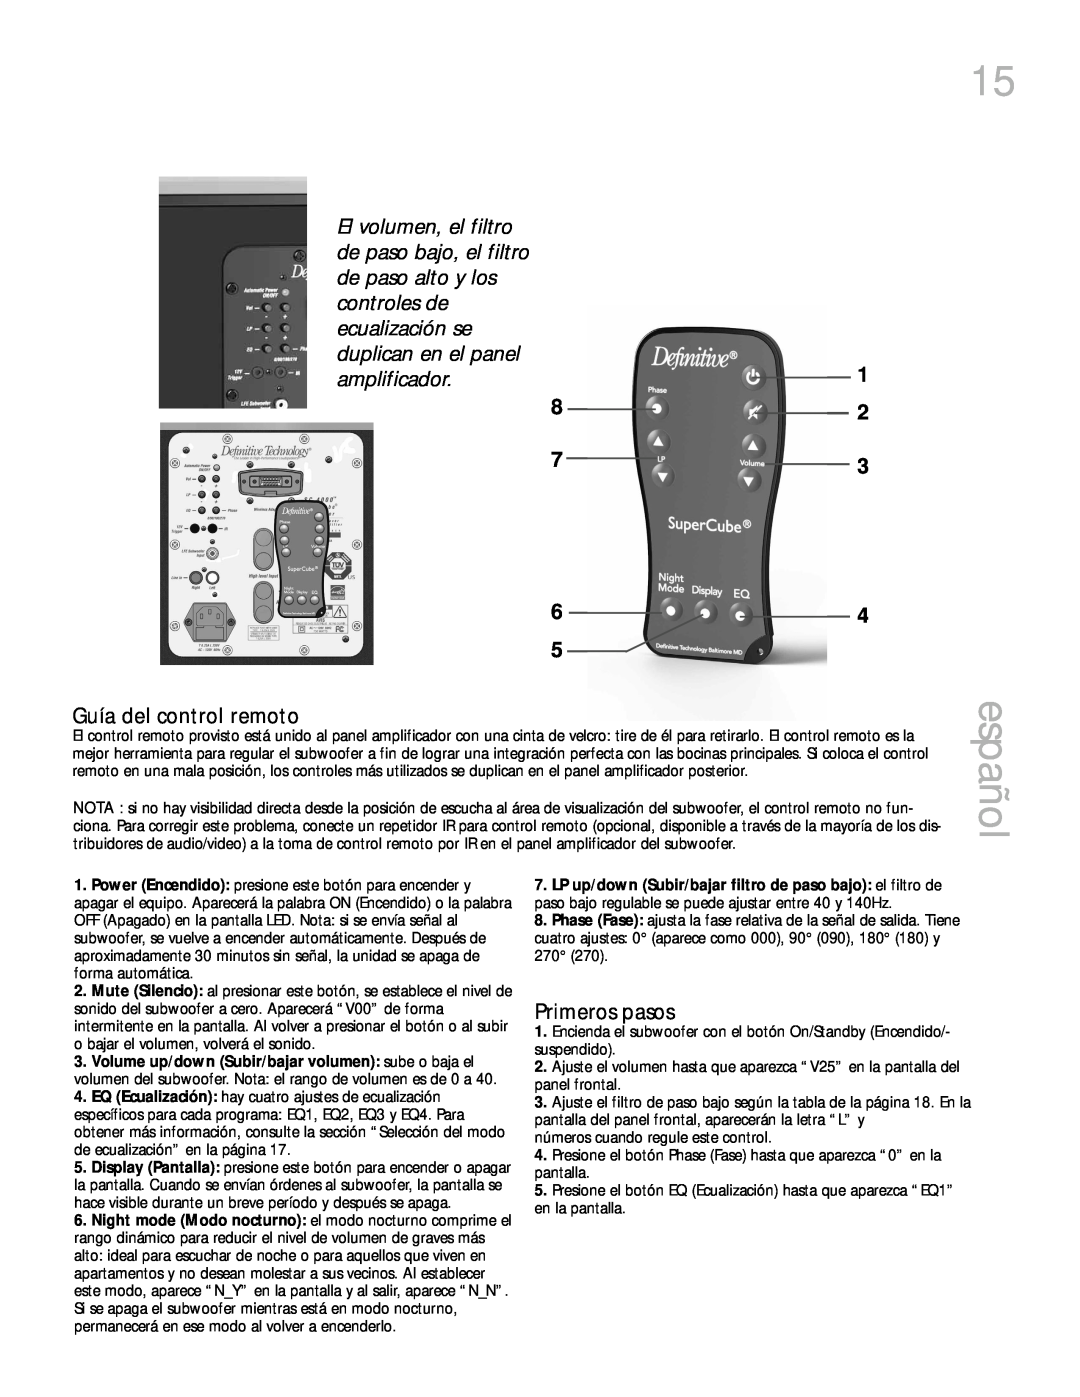 Definitive Technology 6000, 4000 owner manual español, Guía del control remoto, Primeros pasos 